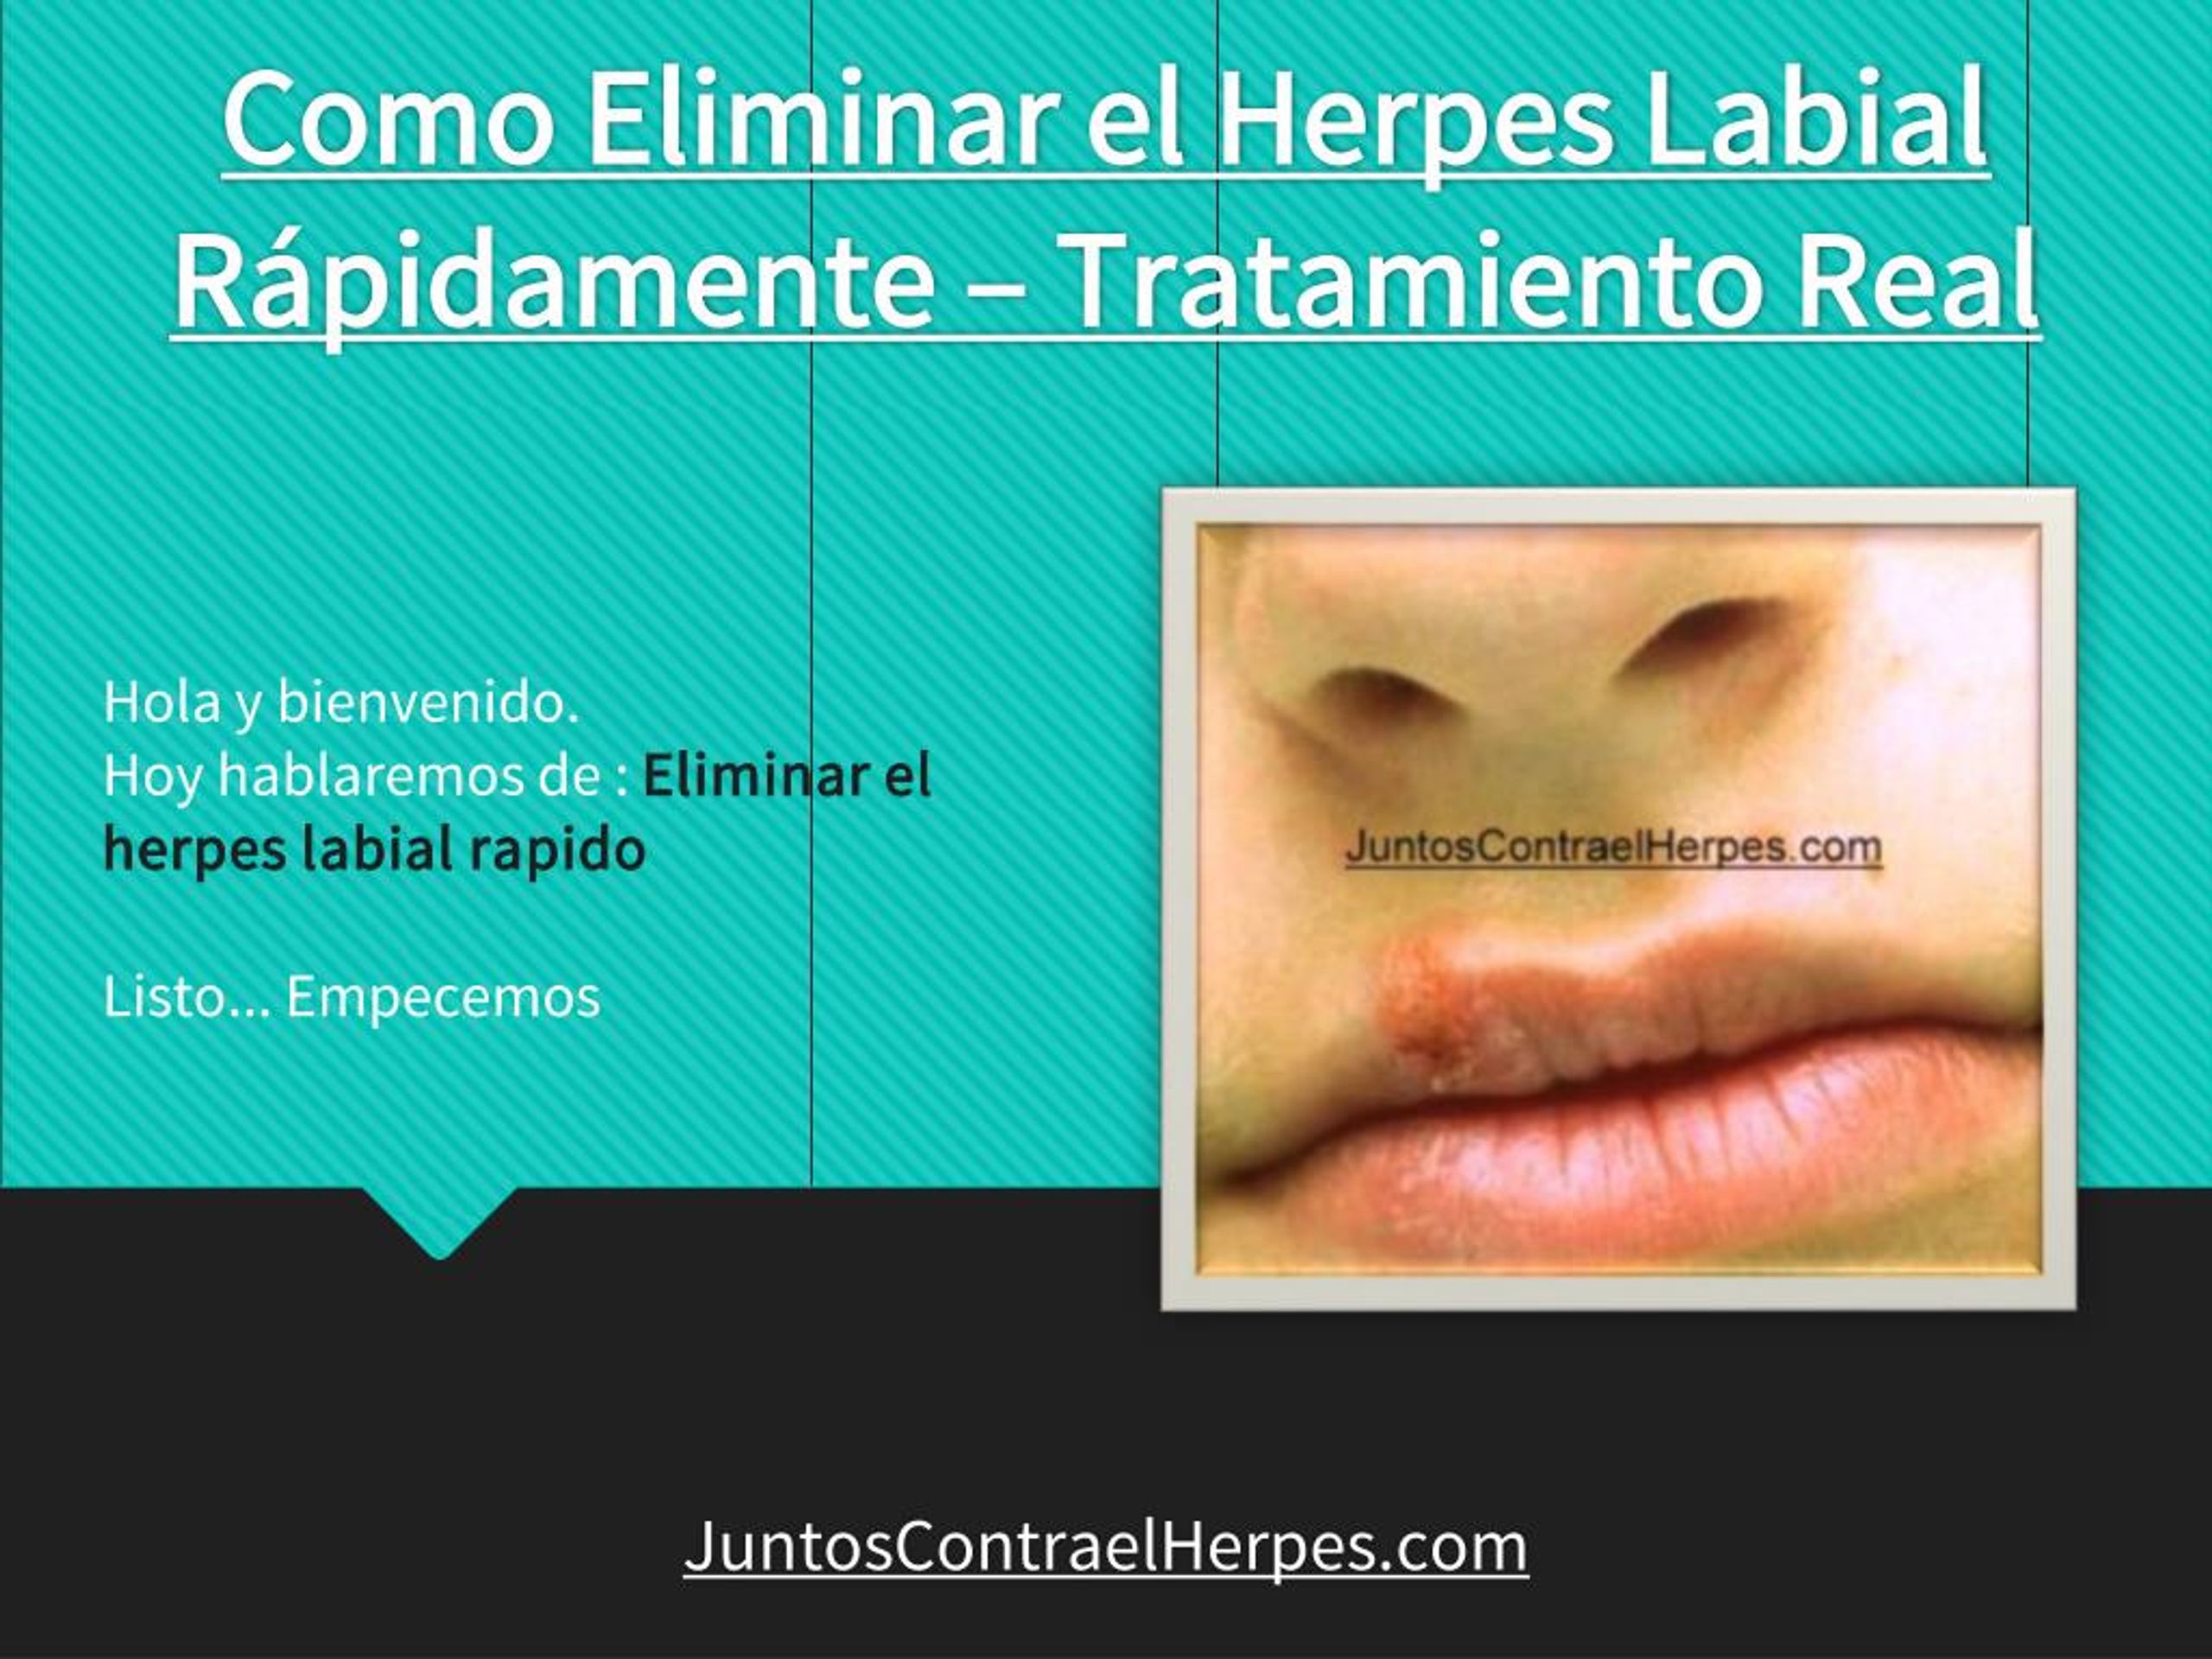 Ppt Como Eliminar El Herpes Labial Rapidamente Tratamiento Real Powerpoint Presentation Id